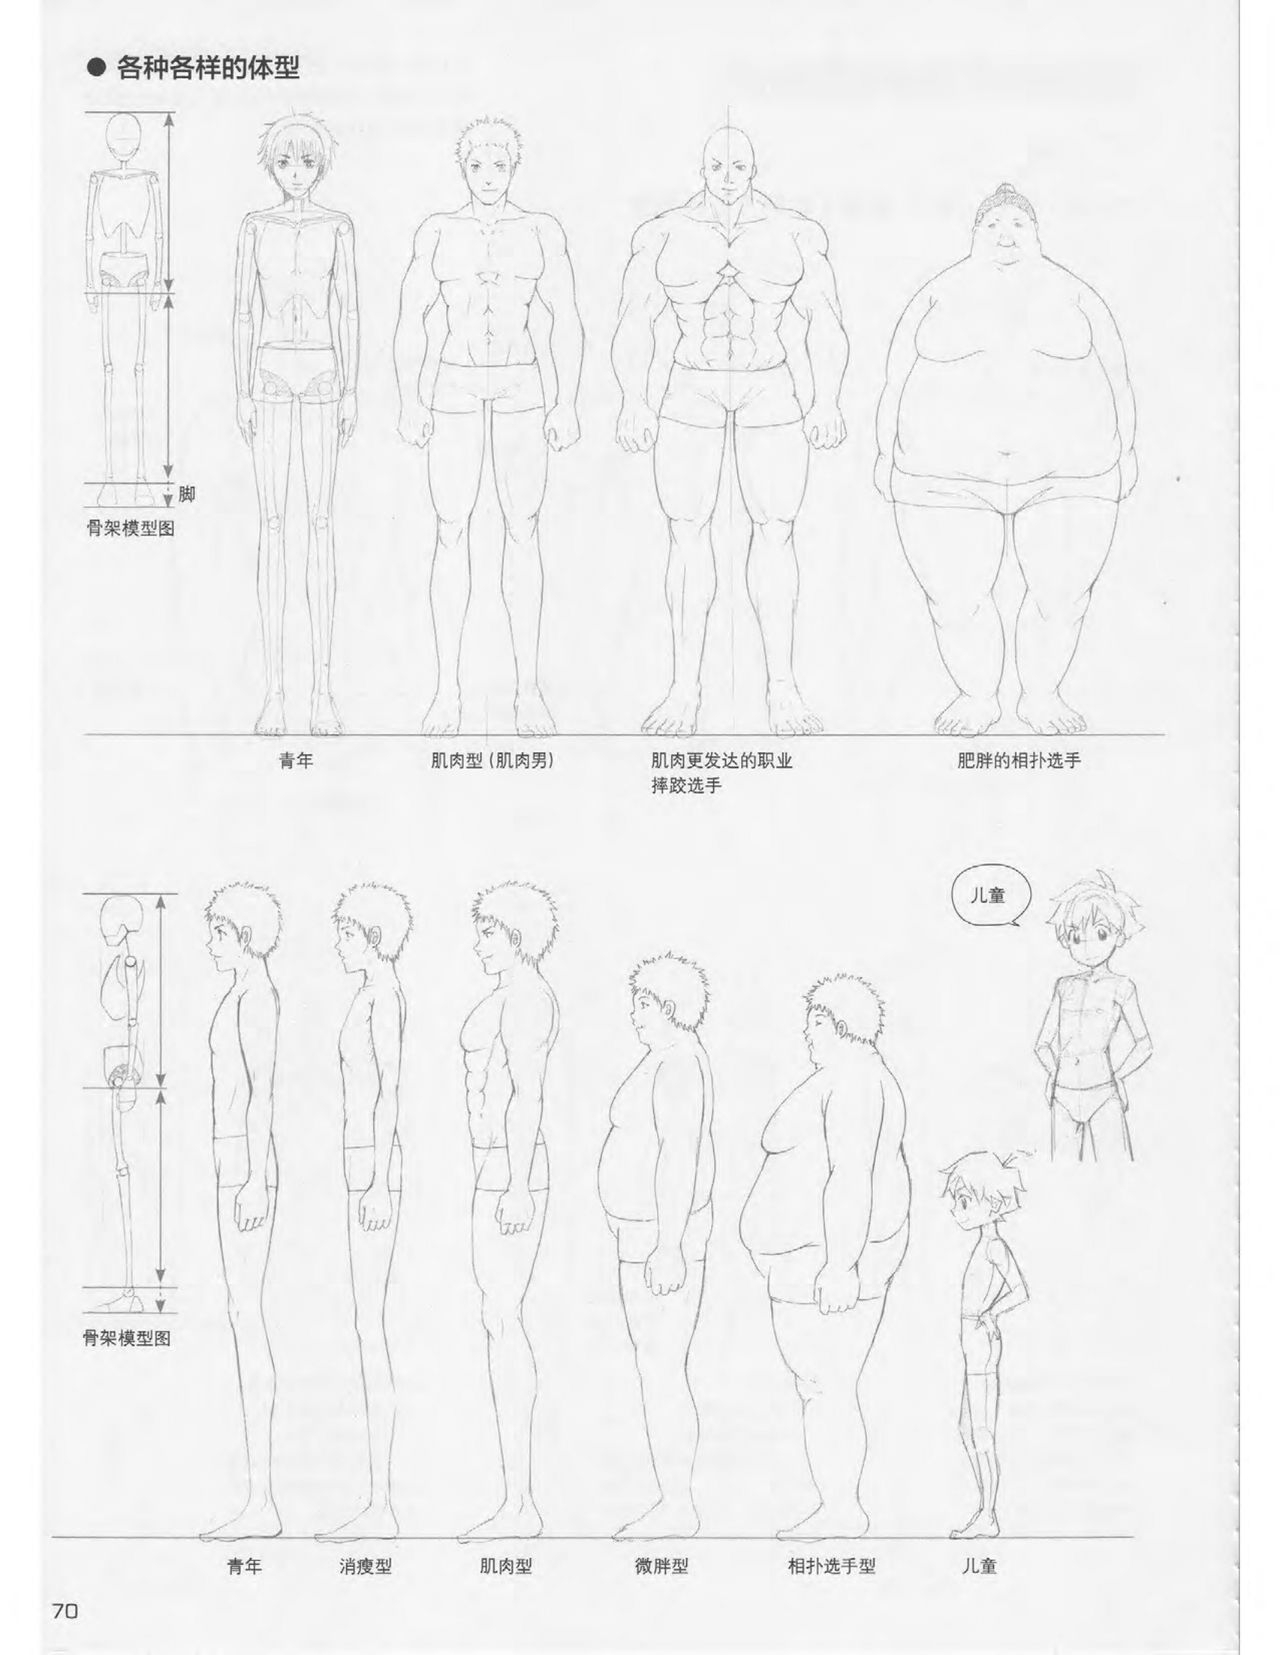 Japanese Manga Master Lecture 3: Lin Akira and Kakumaru Maru Talk About Glamorous Character Modeling 70